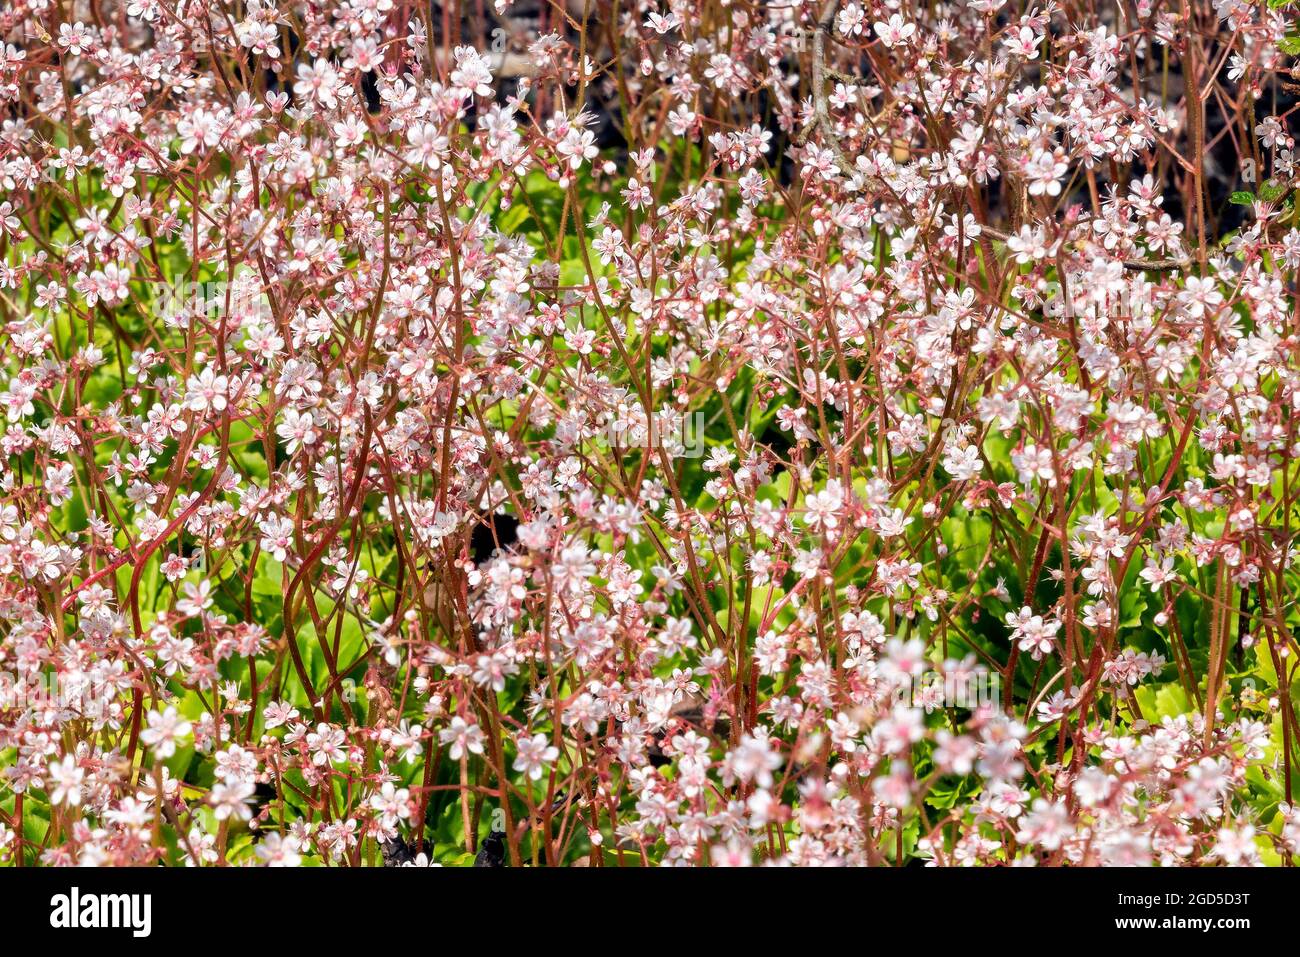 Saxifraga x urbium plante à fleurs printanière d'été avec une fleur rose blanche d'été communément connue sous le nom de London Pride ou pas si jolie, stock photo im Banque D'Images